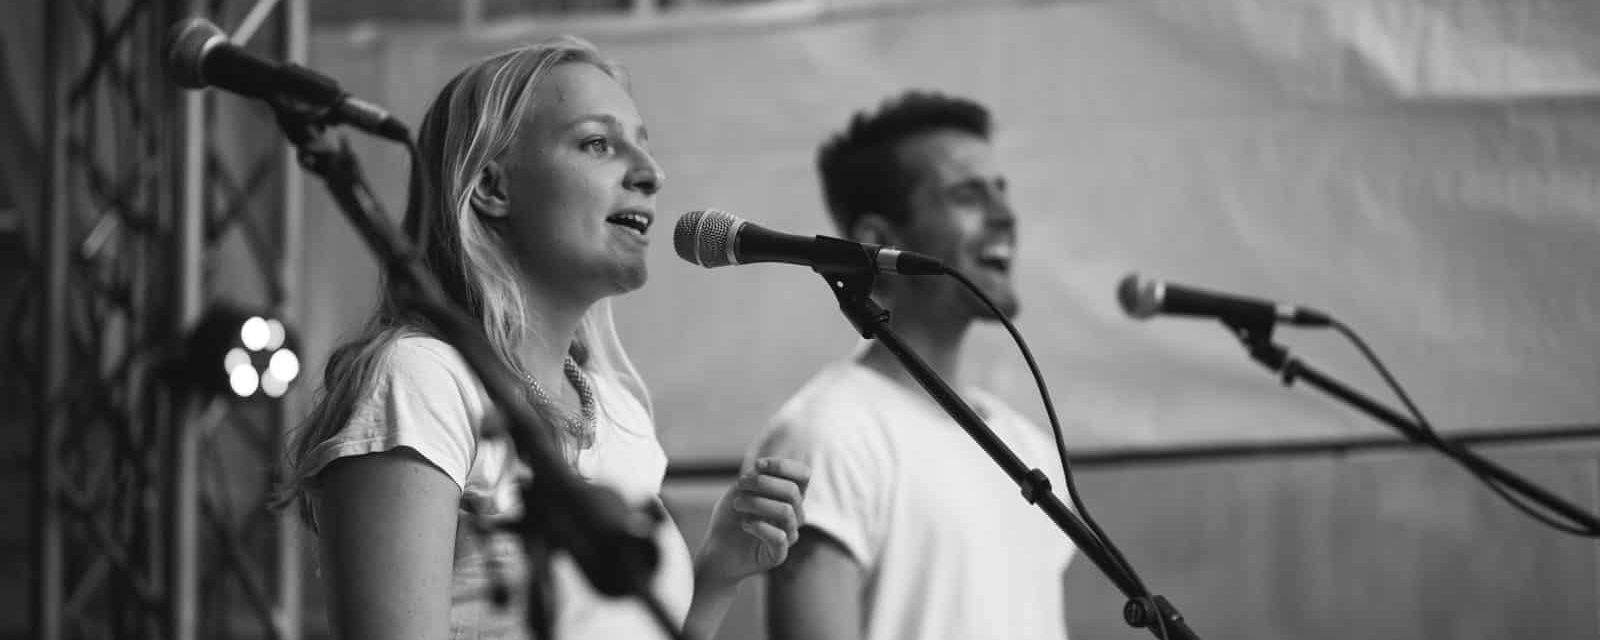 Thirdline auf dem Turnier der Herzen 2017 – Sänger Niklas mit Shure SM58 und Sängerin Katharina mit Shure SM86